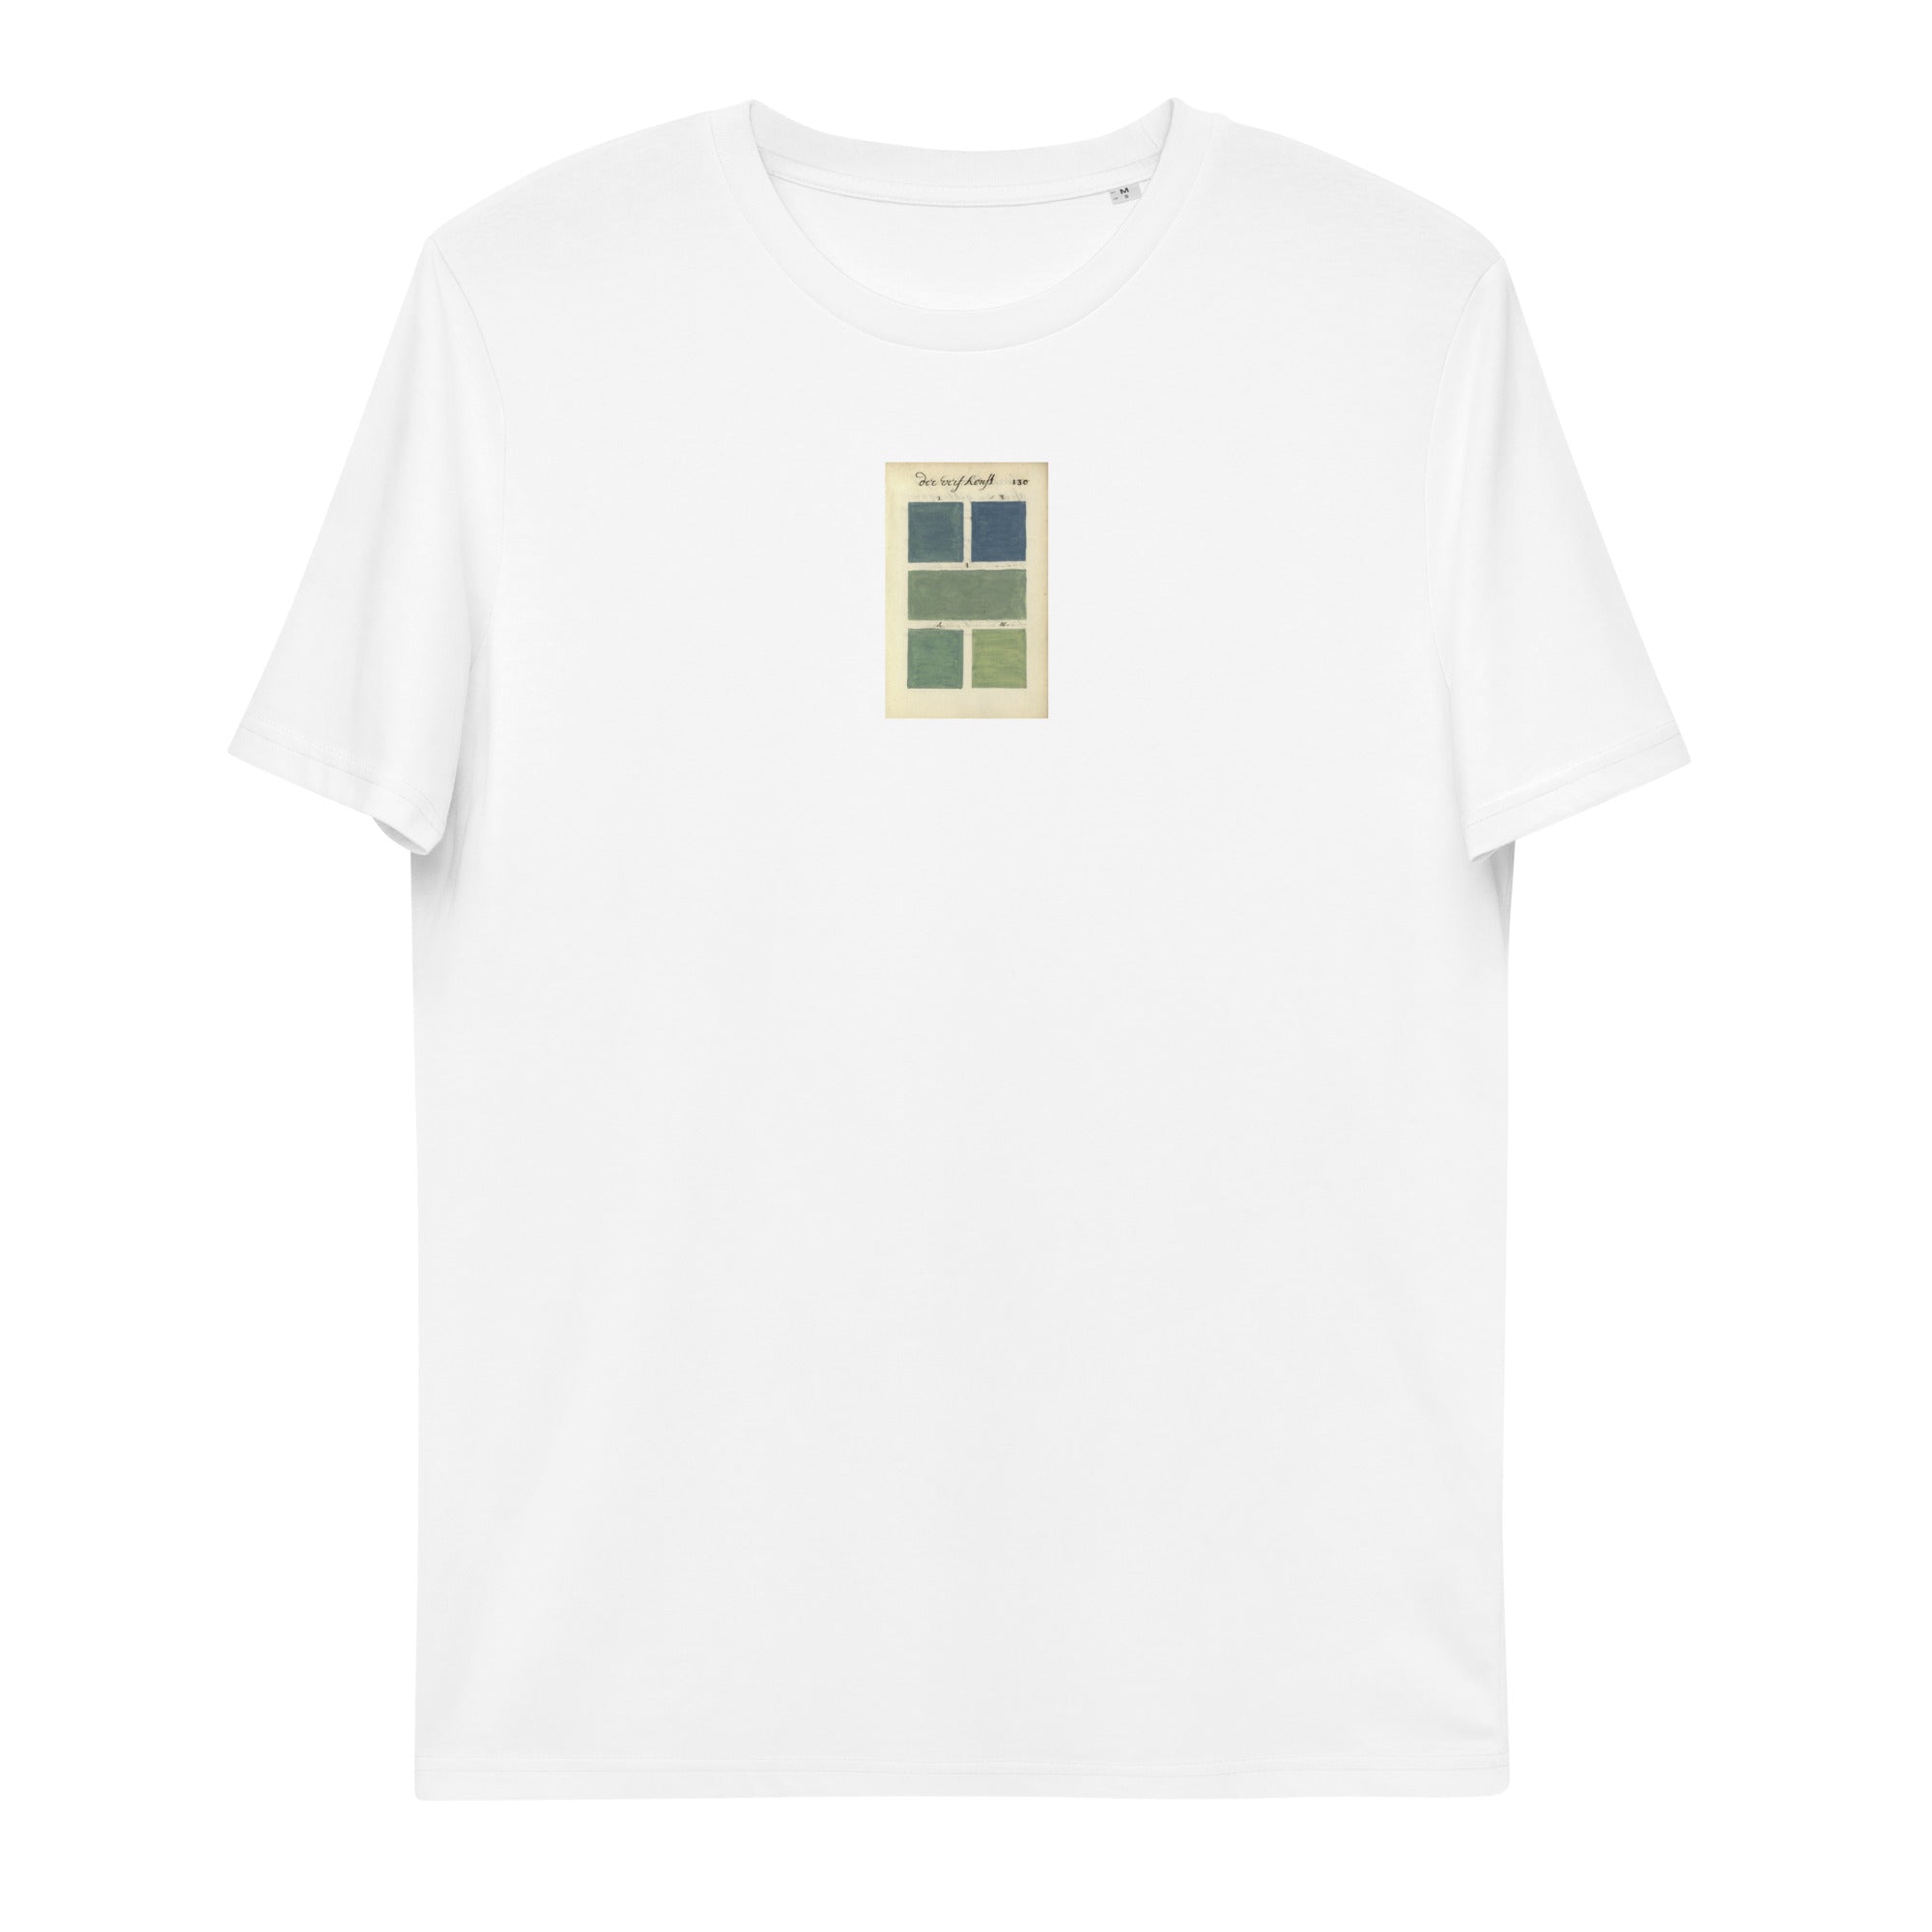 Boogert #130 Unisex organic cotton t-shirt